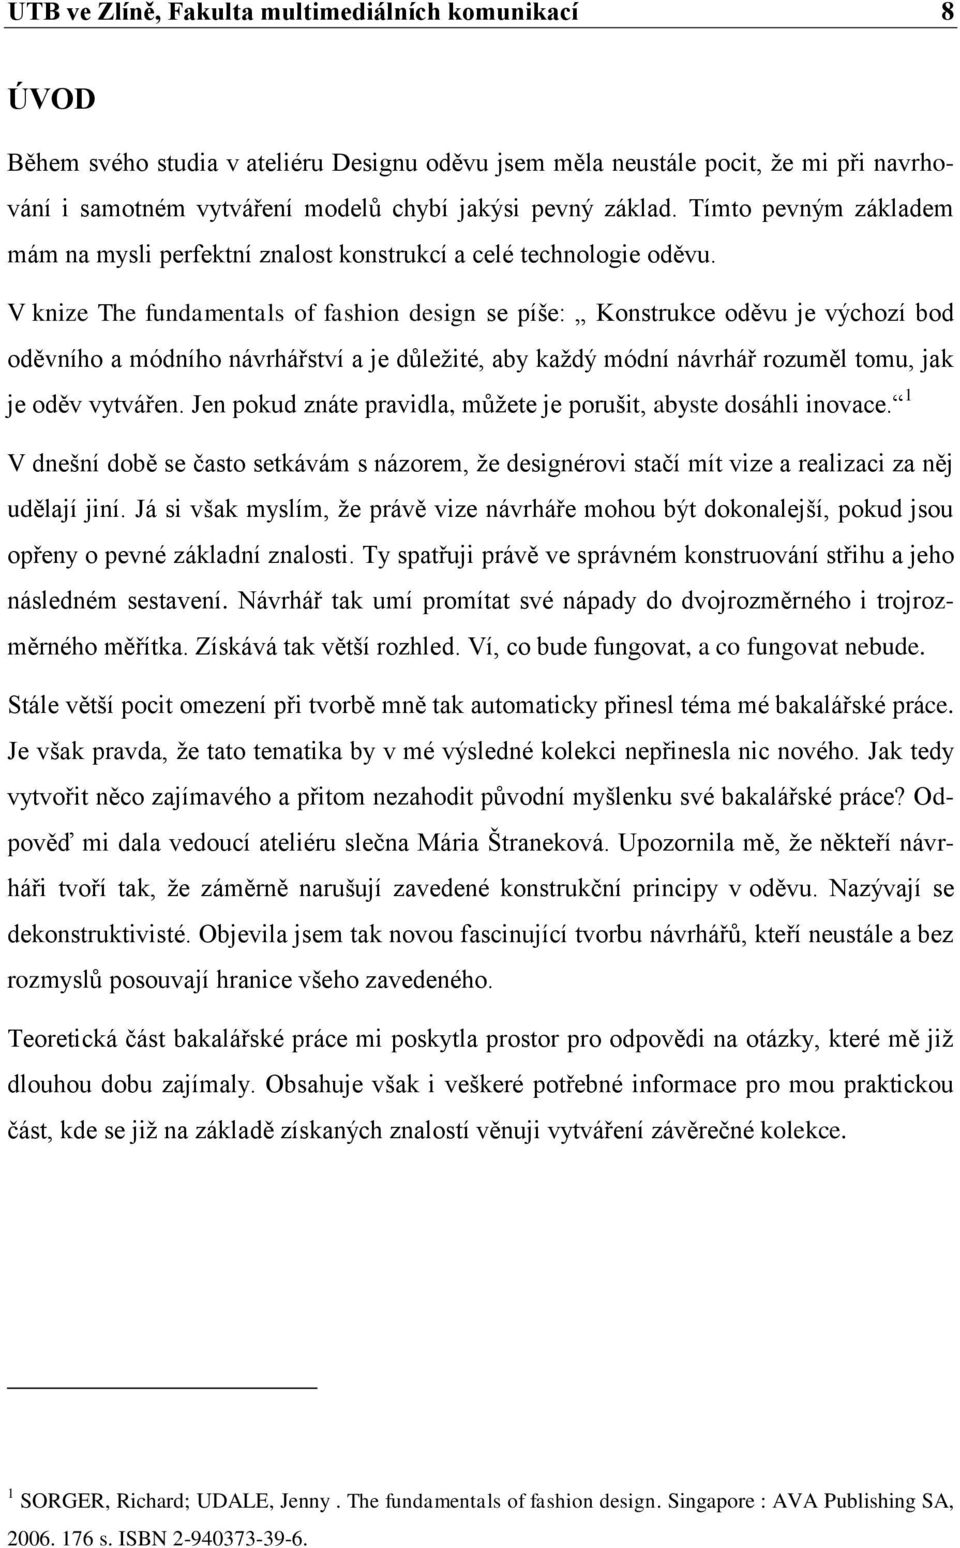 Dekonstrukce v konstrukci. Tereza Mašlaňová - PDF Free Download